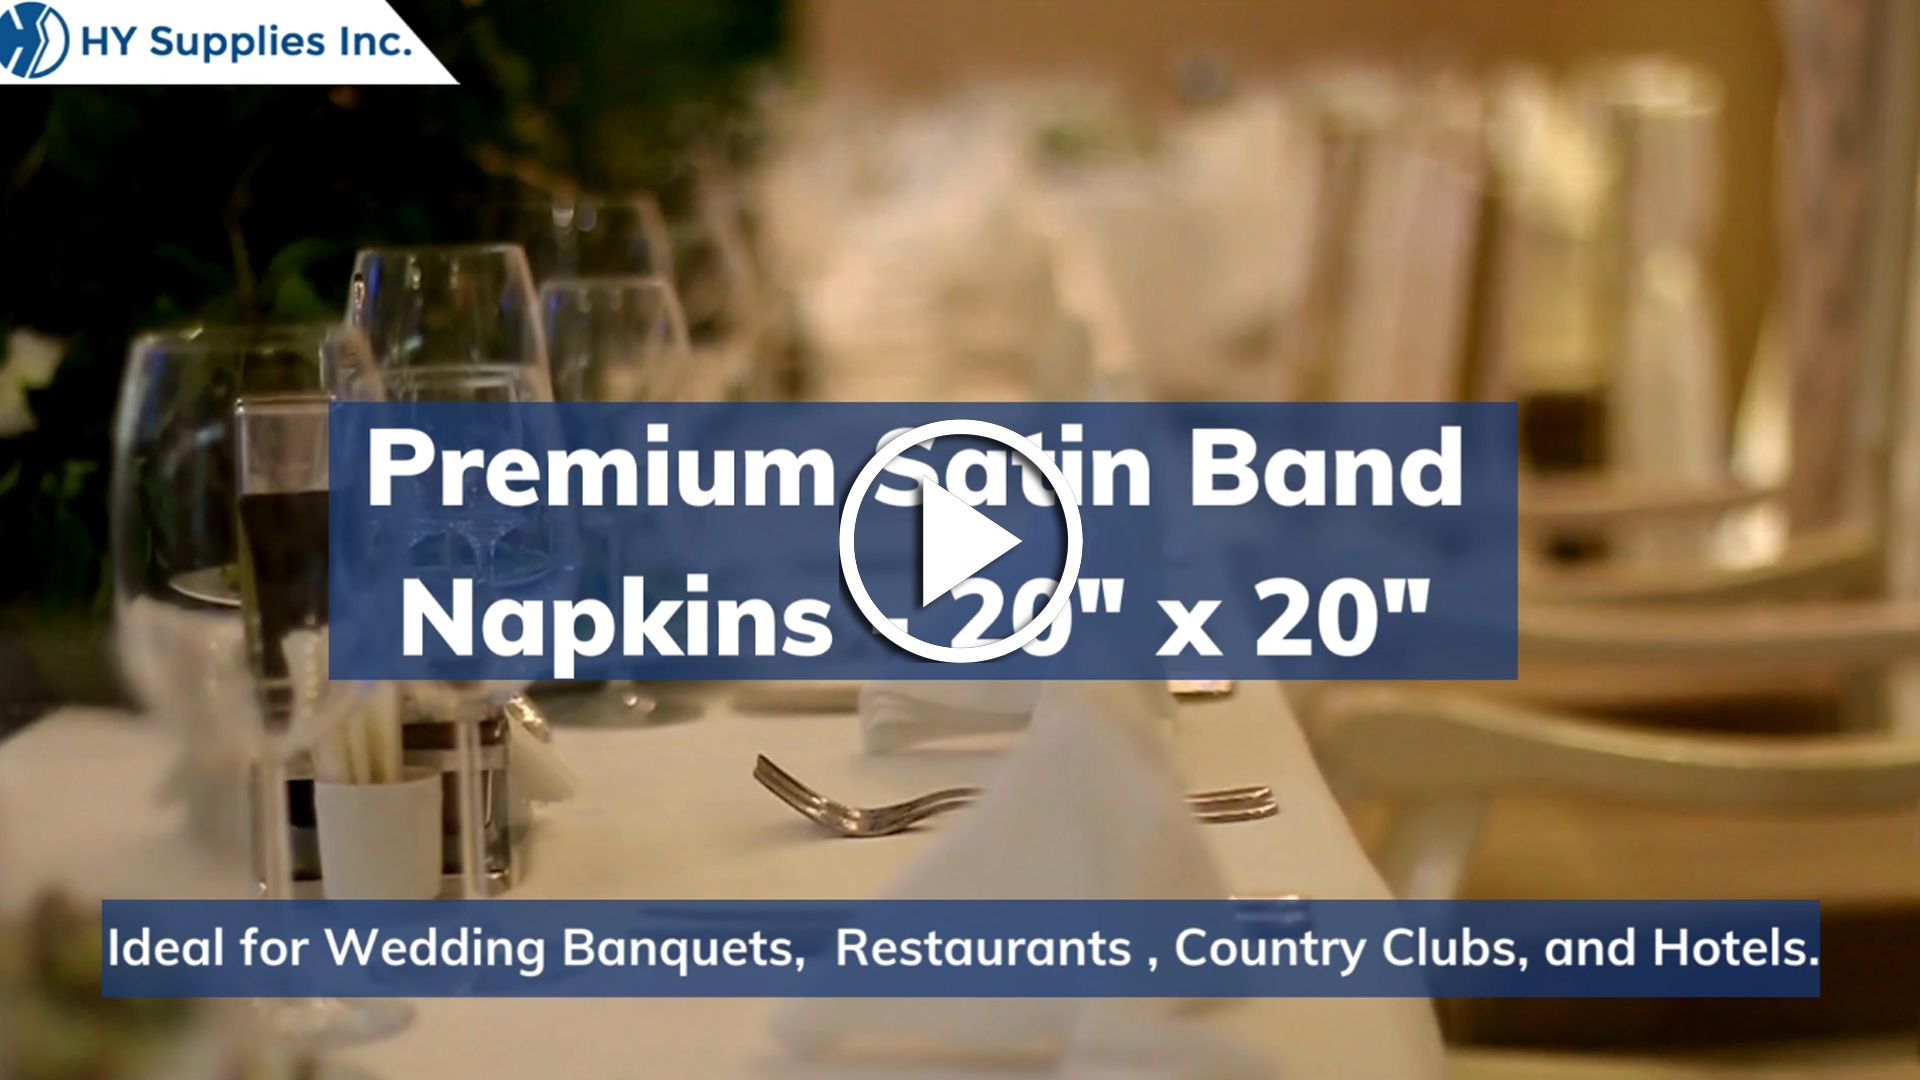 Premium Satin Band Napkins - 20"" x 20""